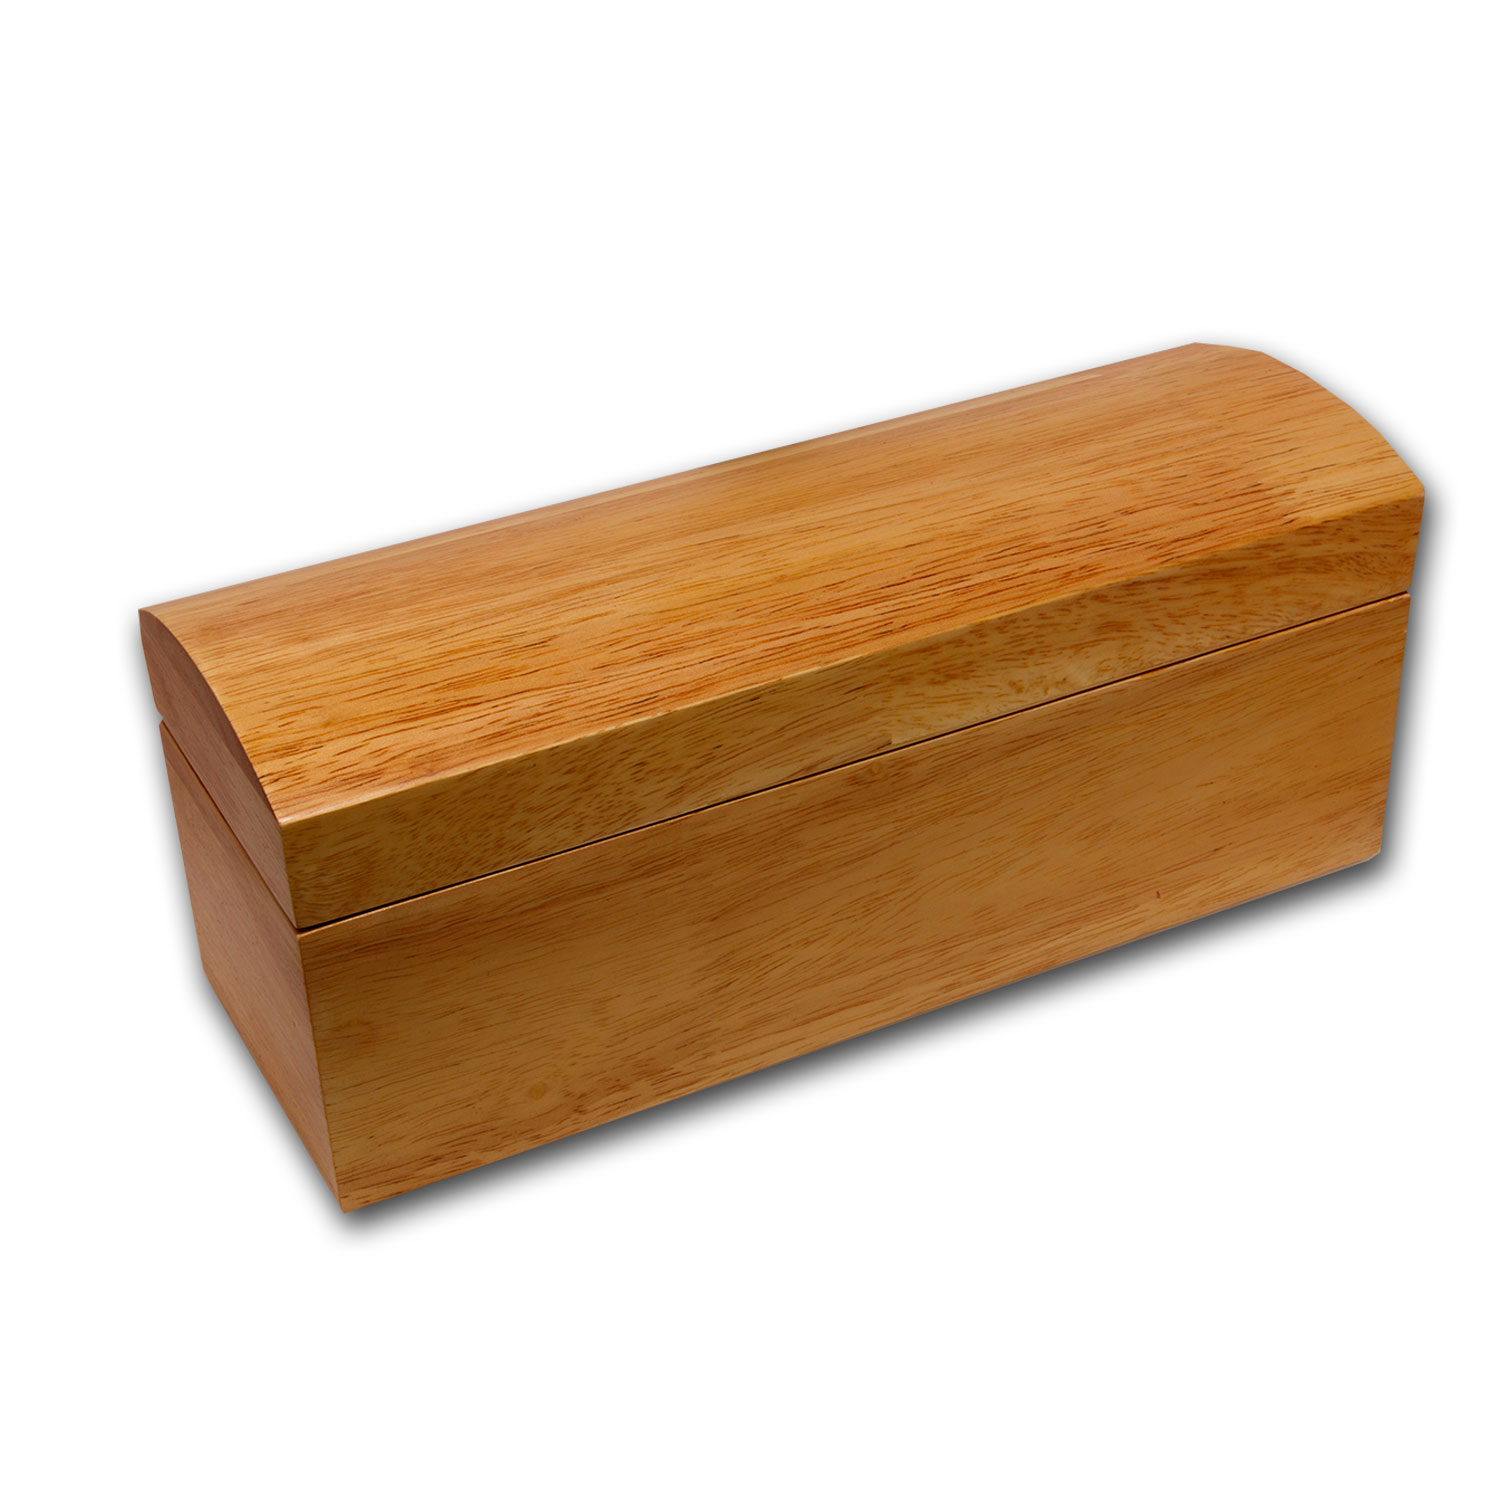 Buy Wooden Slab Natural Wood Storage Box - Twenty Slabs (PCGS or NGC)